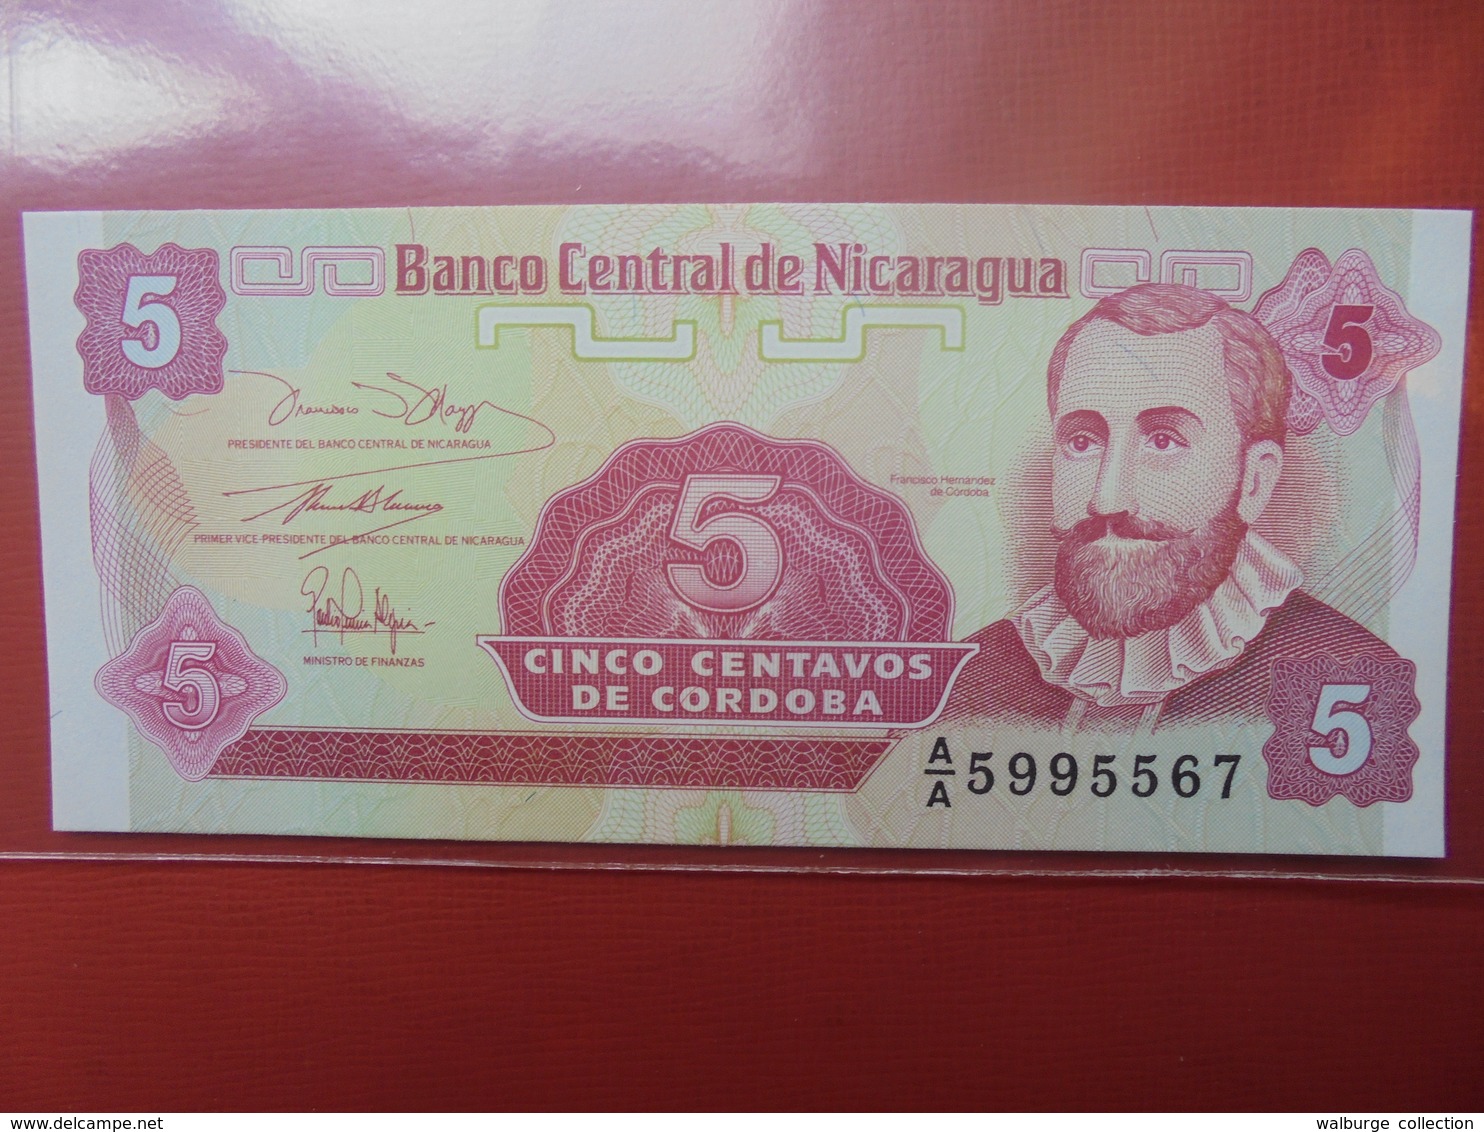 NICARAGUA 5 CENTAVOS 1991 PEU CIRCULER/NEUF - Nicaragua